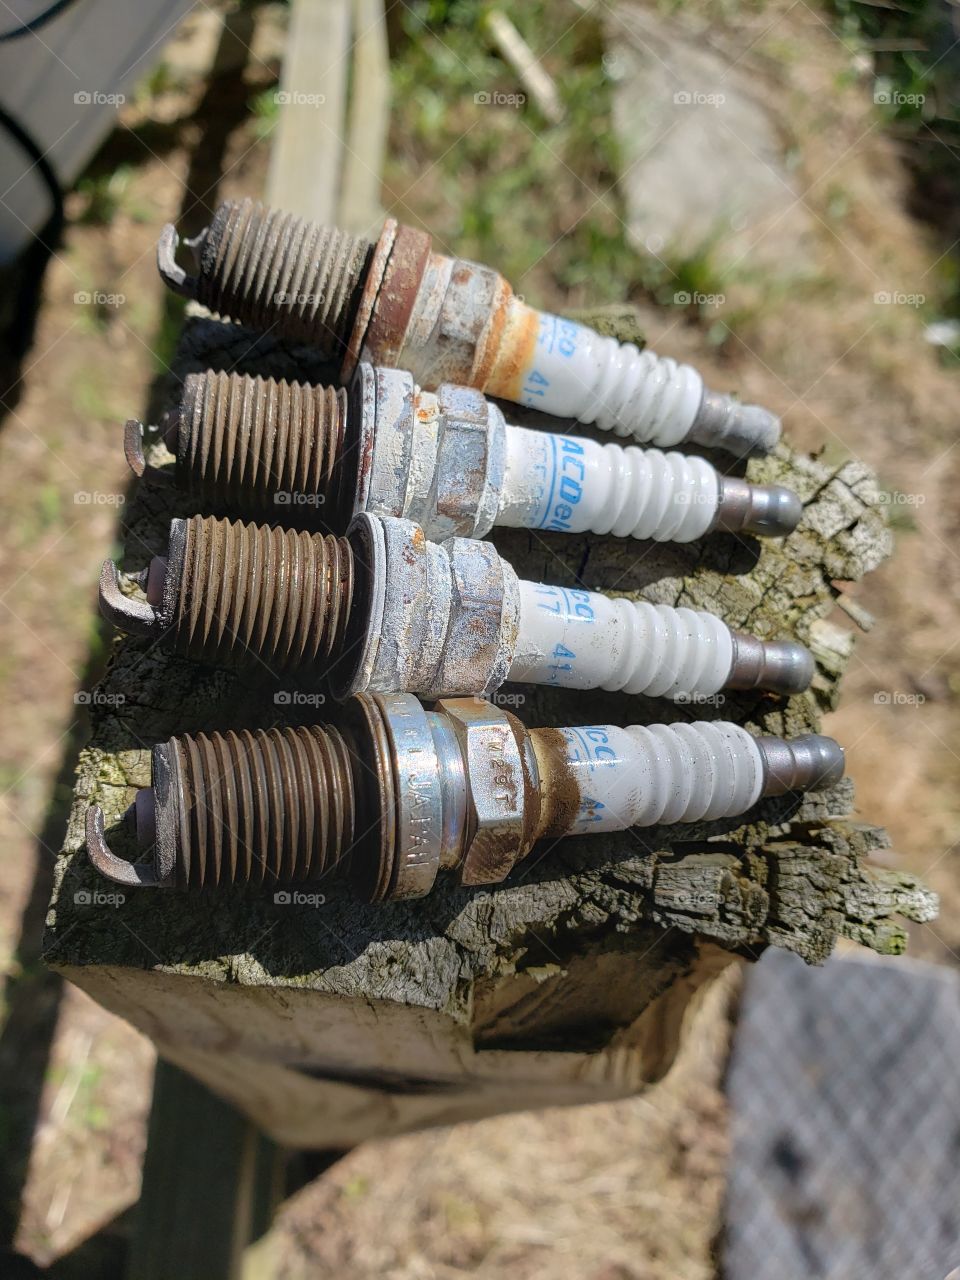 used spark plugs on a post